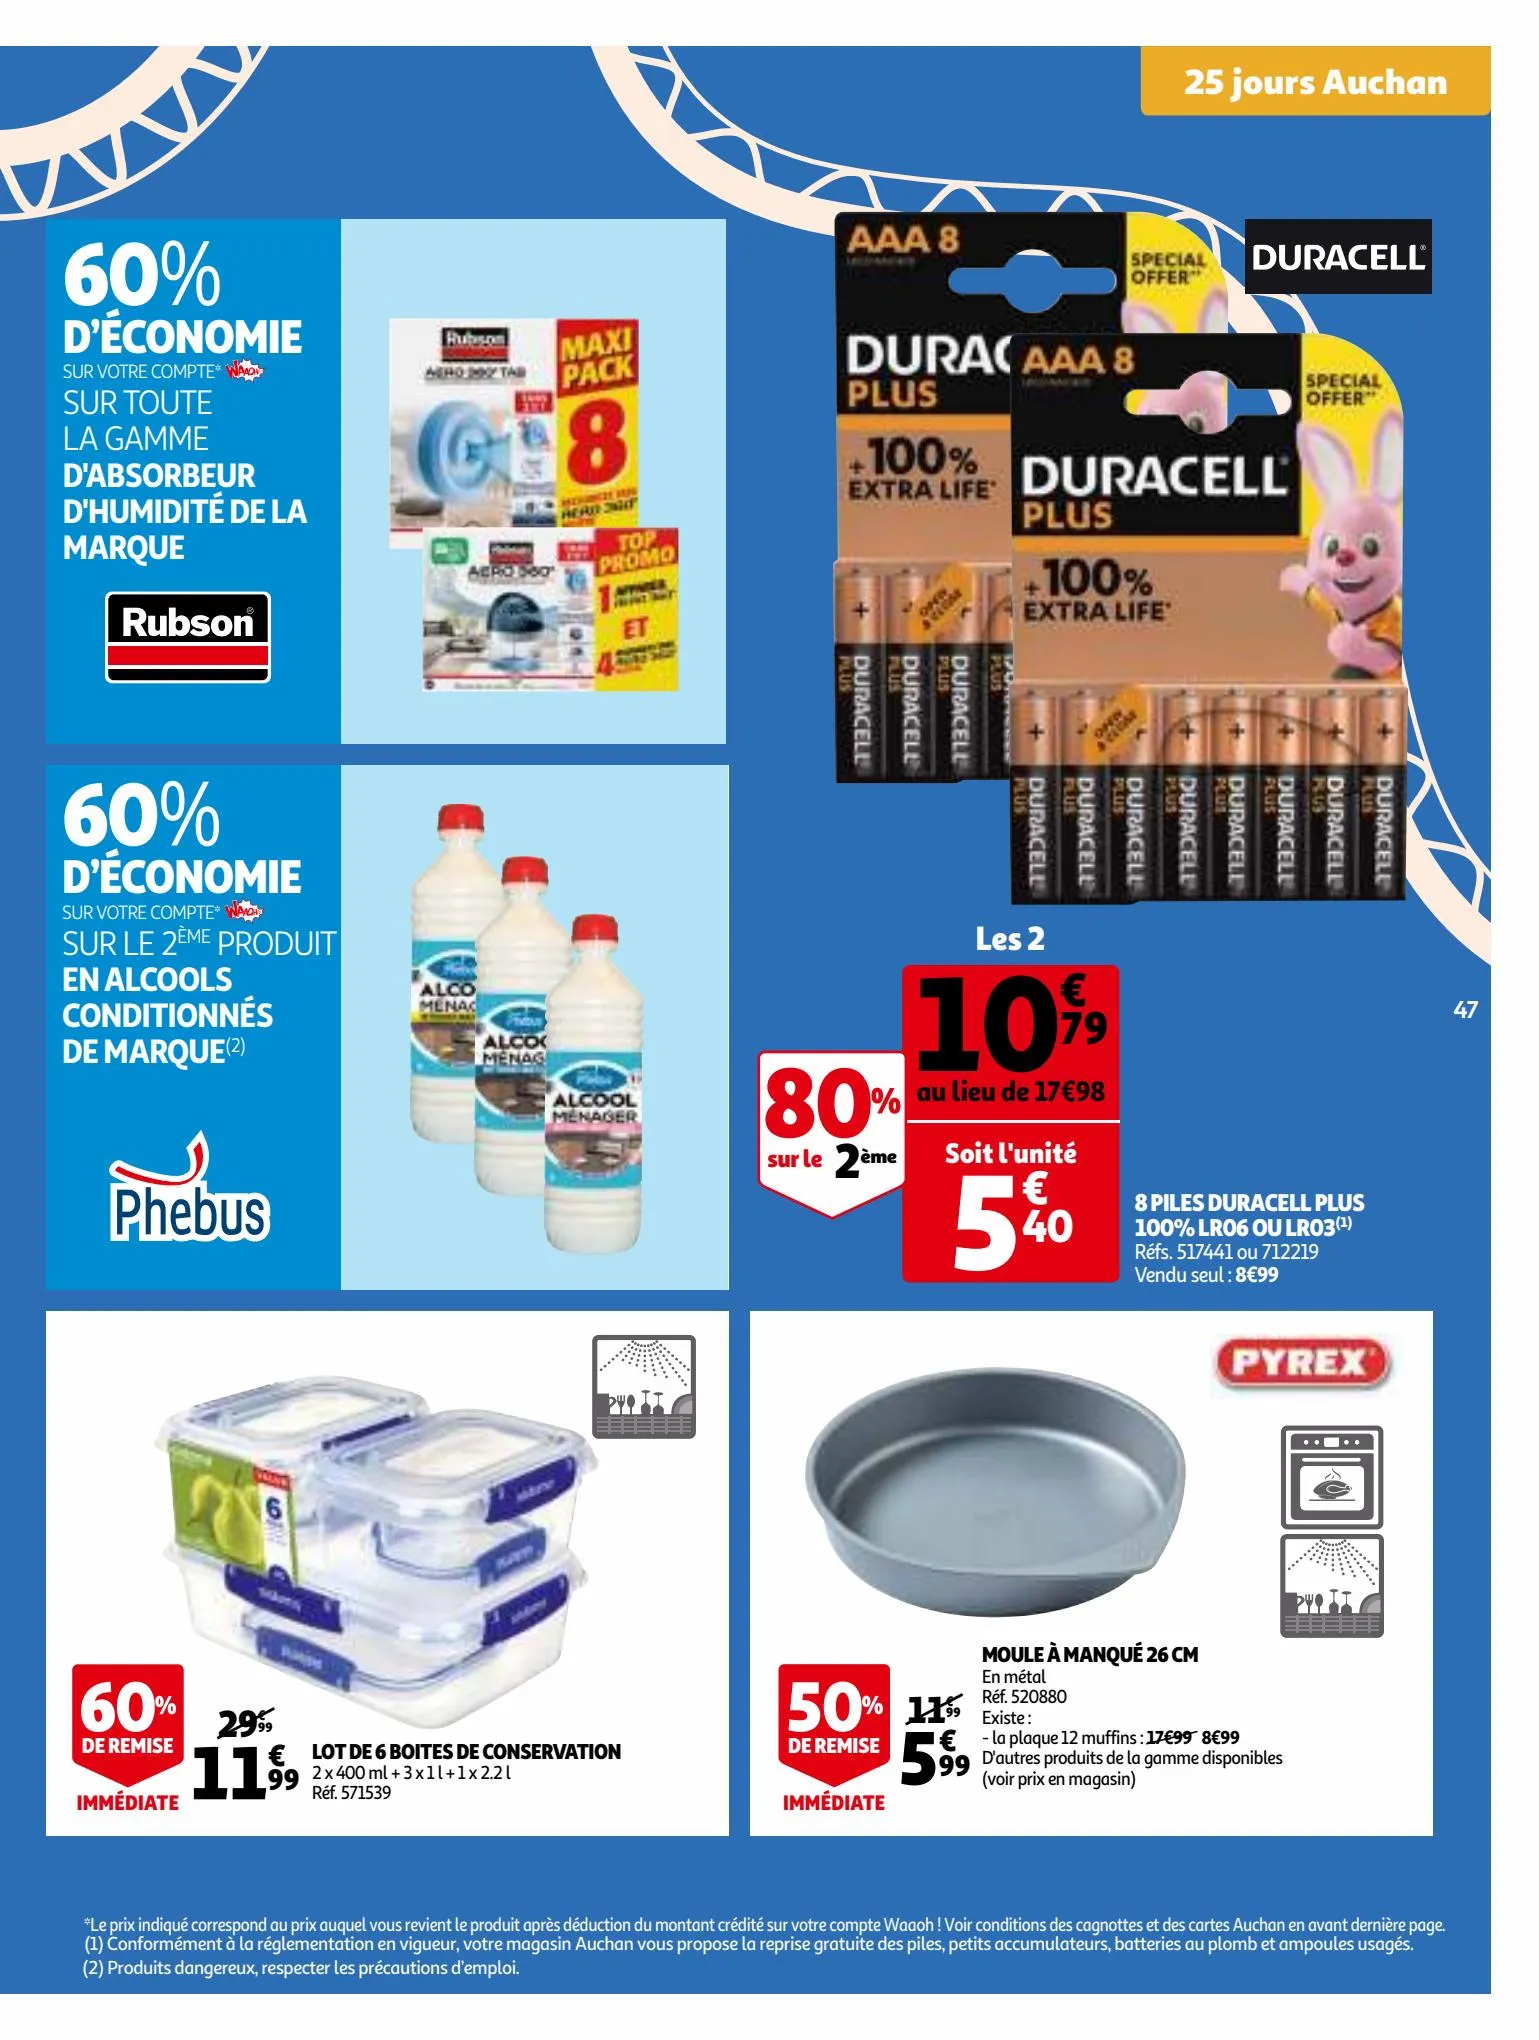 Catalogue 25 Jours Auchan, page 00047